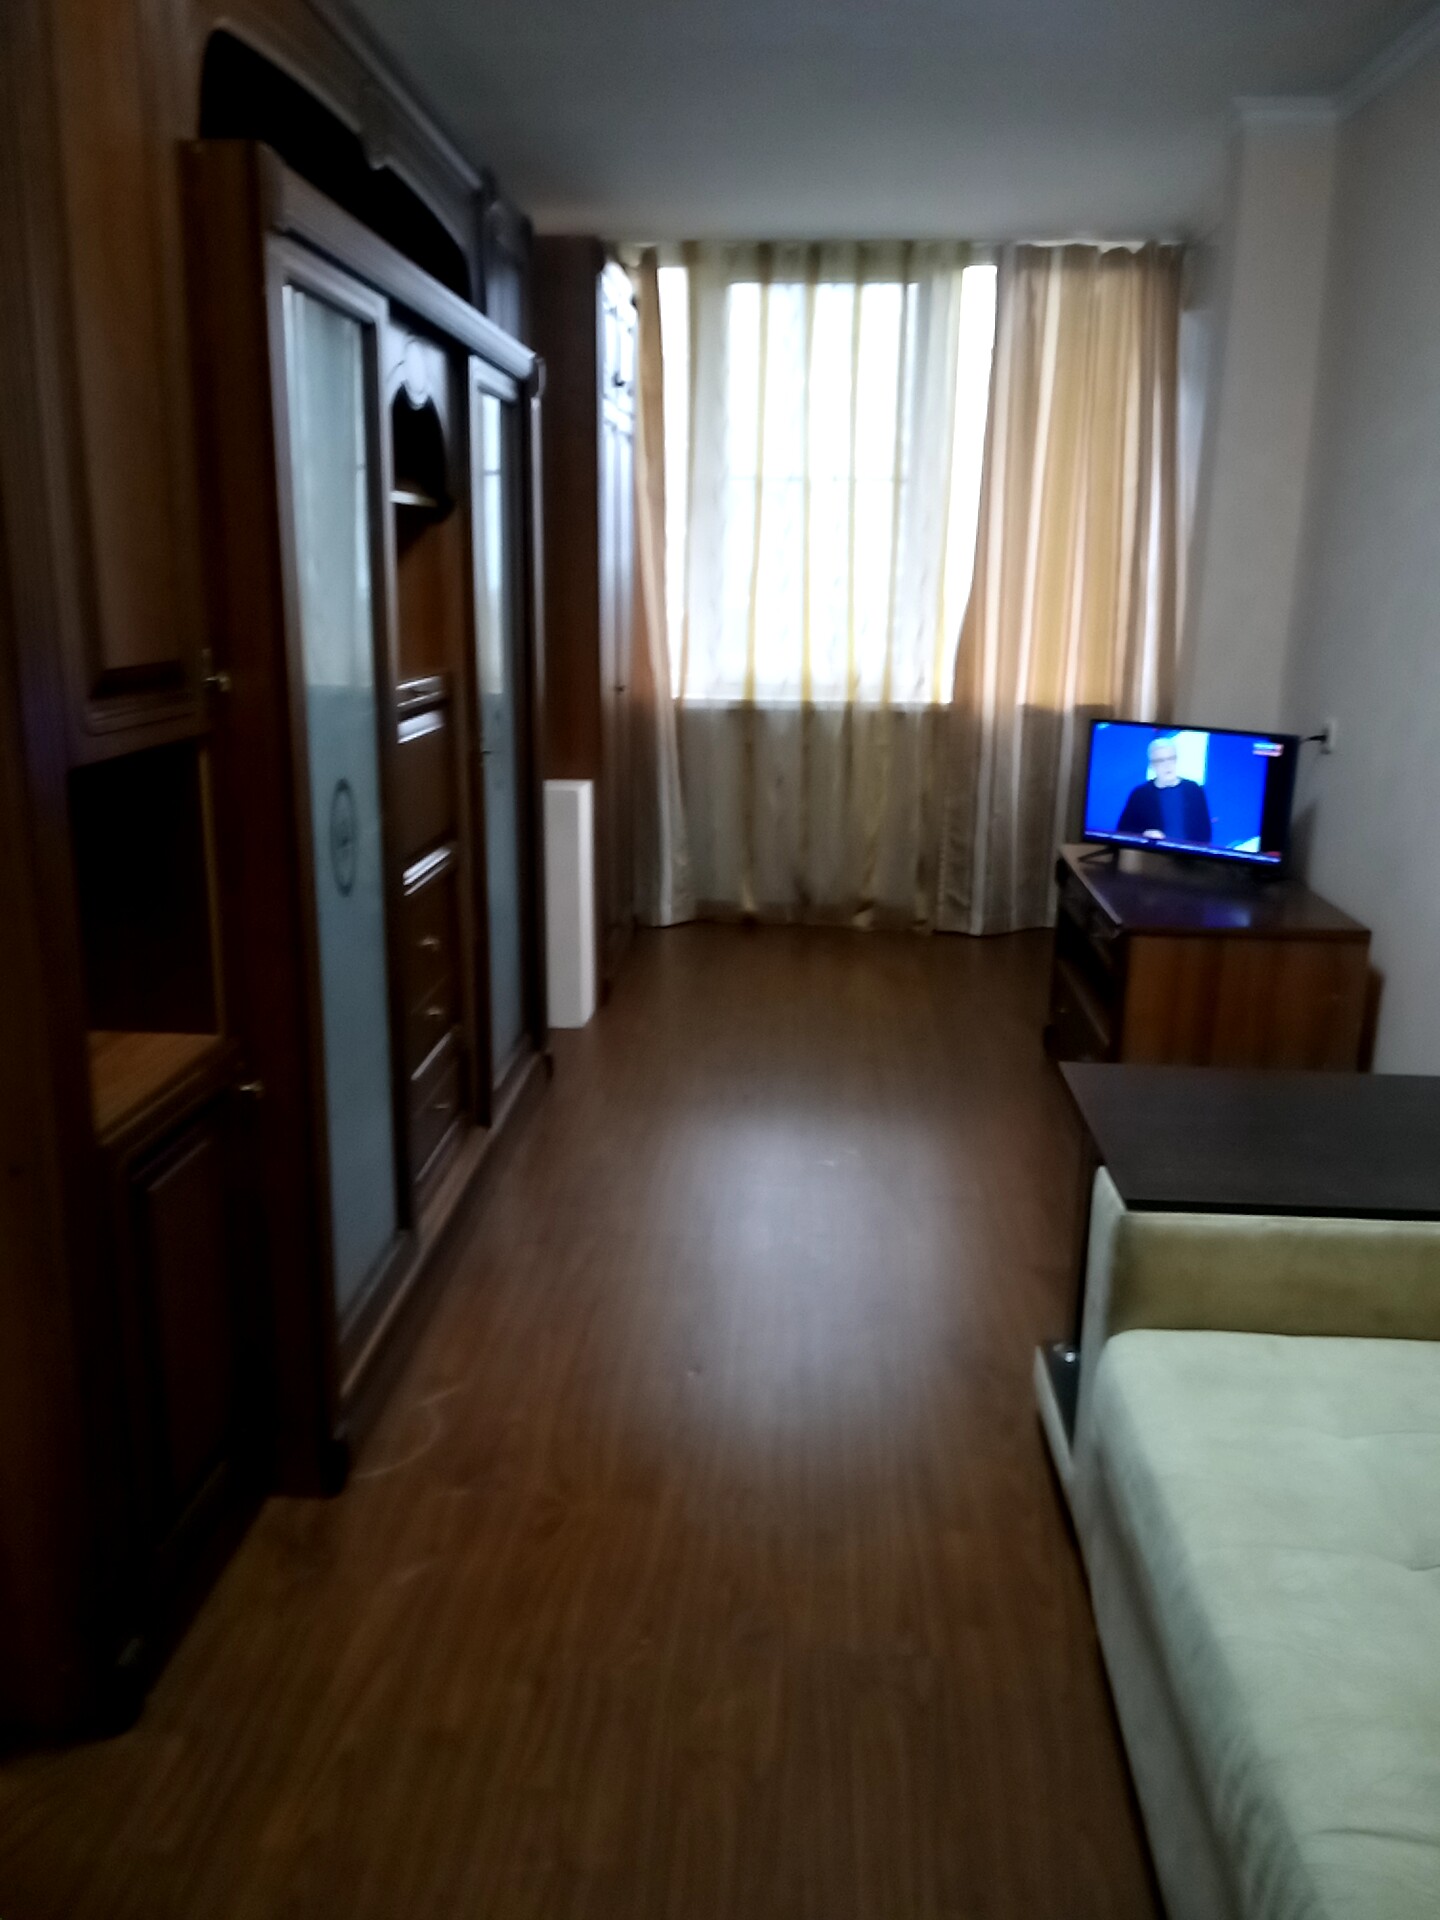 Комната на ул. Войкова, 33 (18кв.м) до 2 гостей